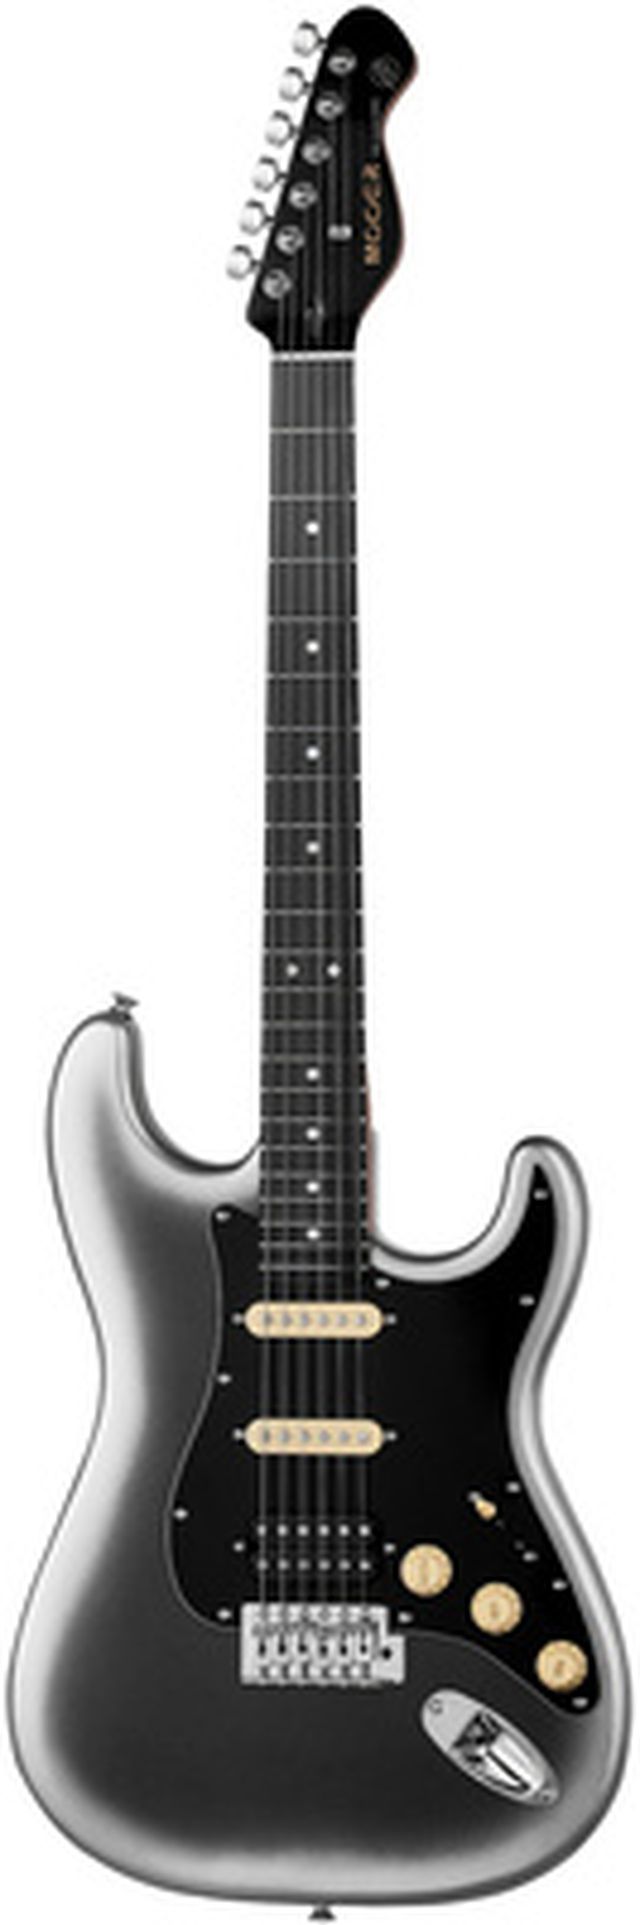 摩尔MSC10专业吉他深银色